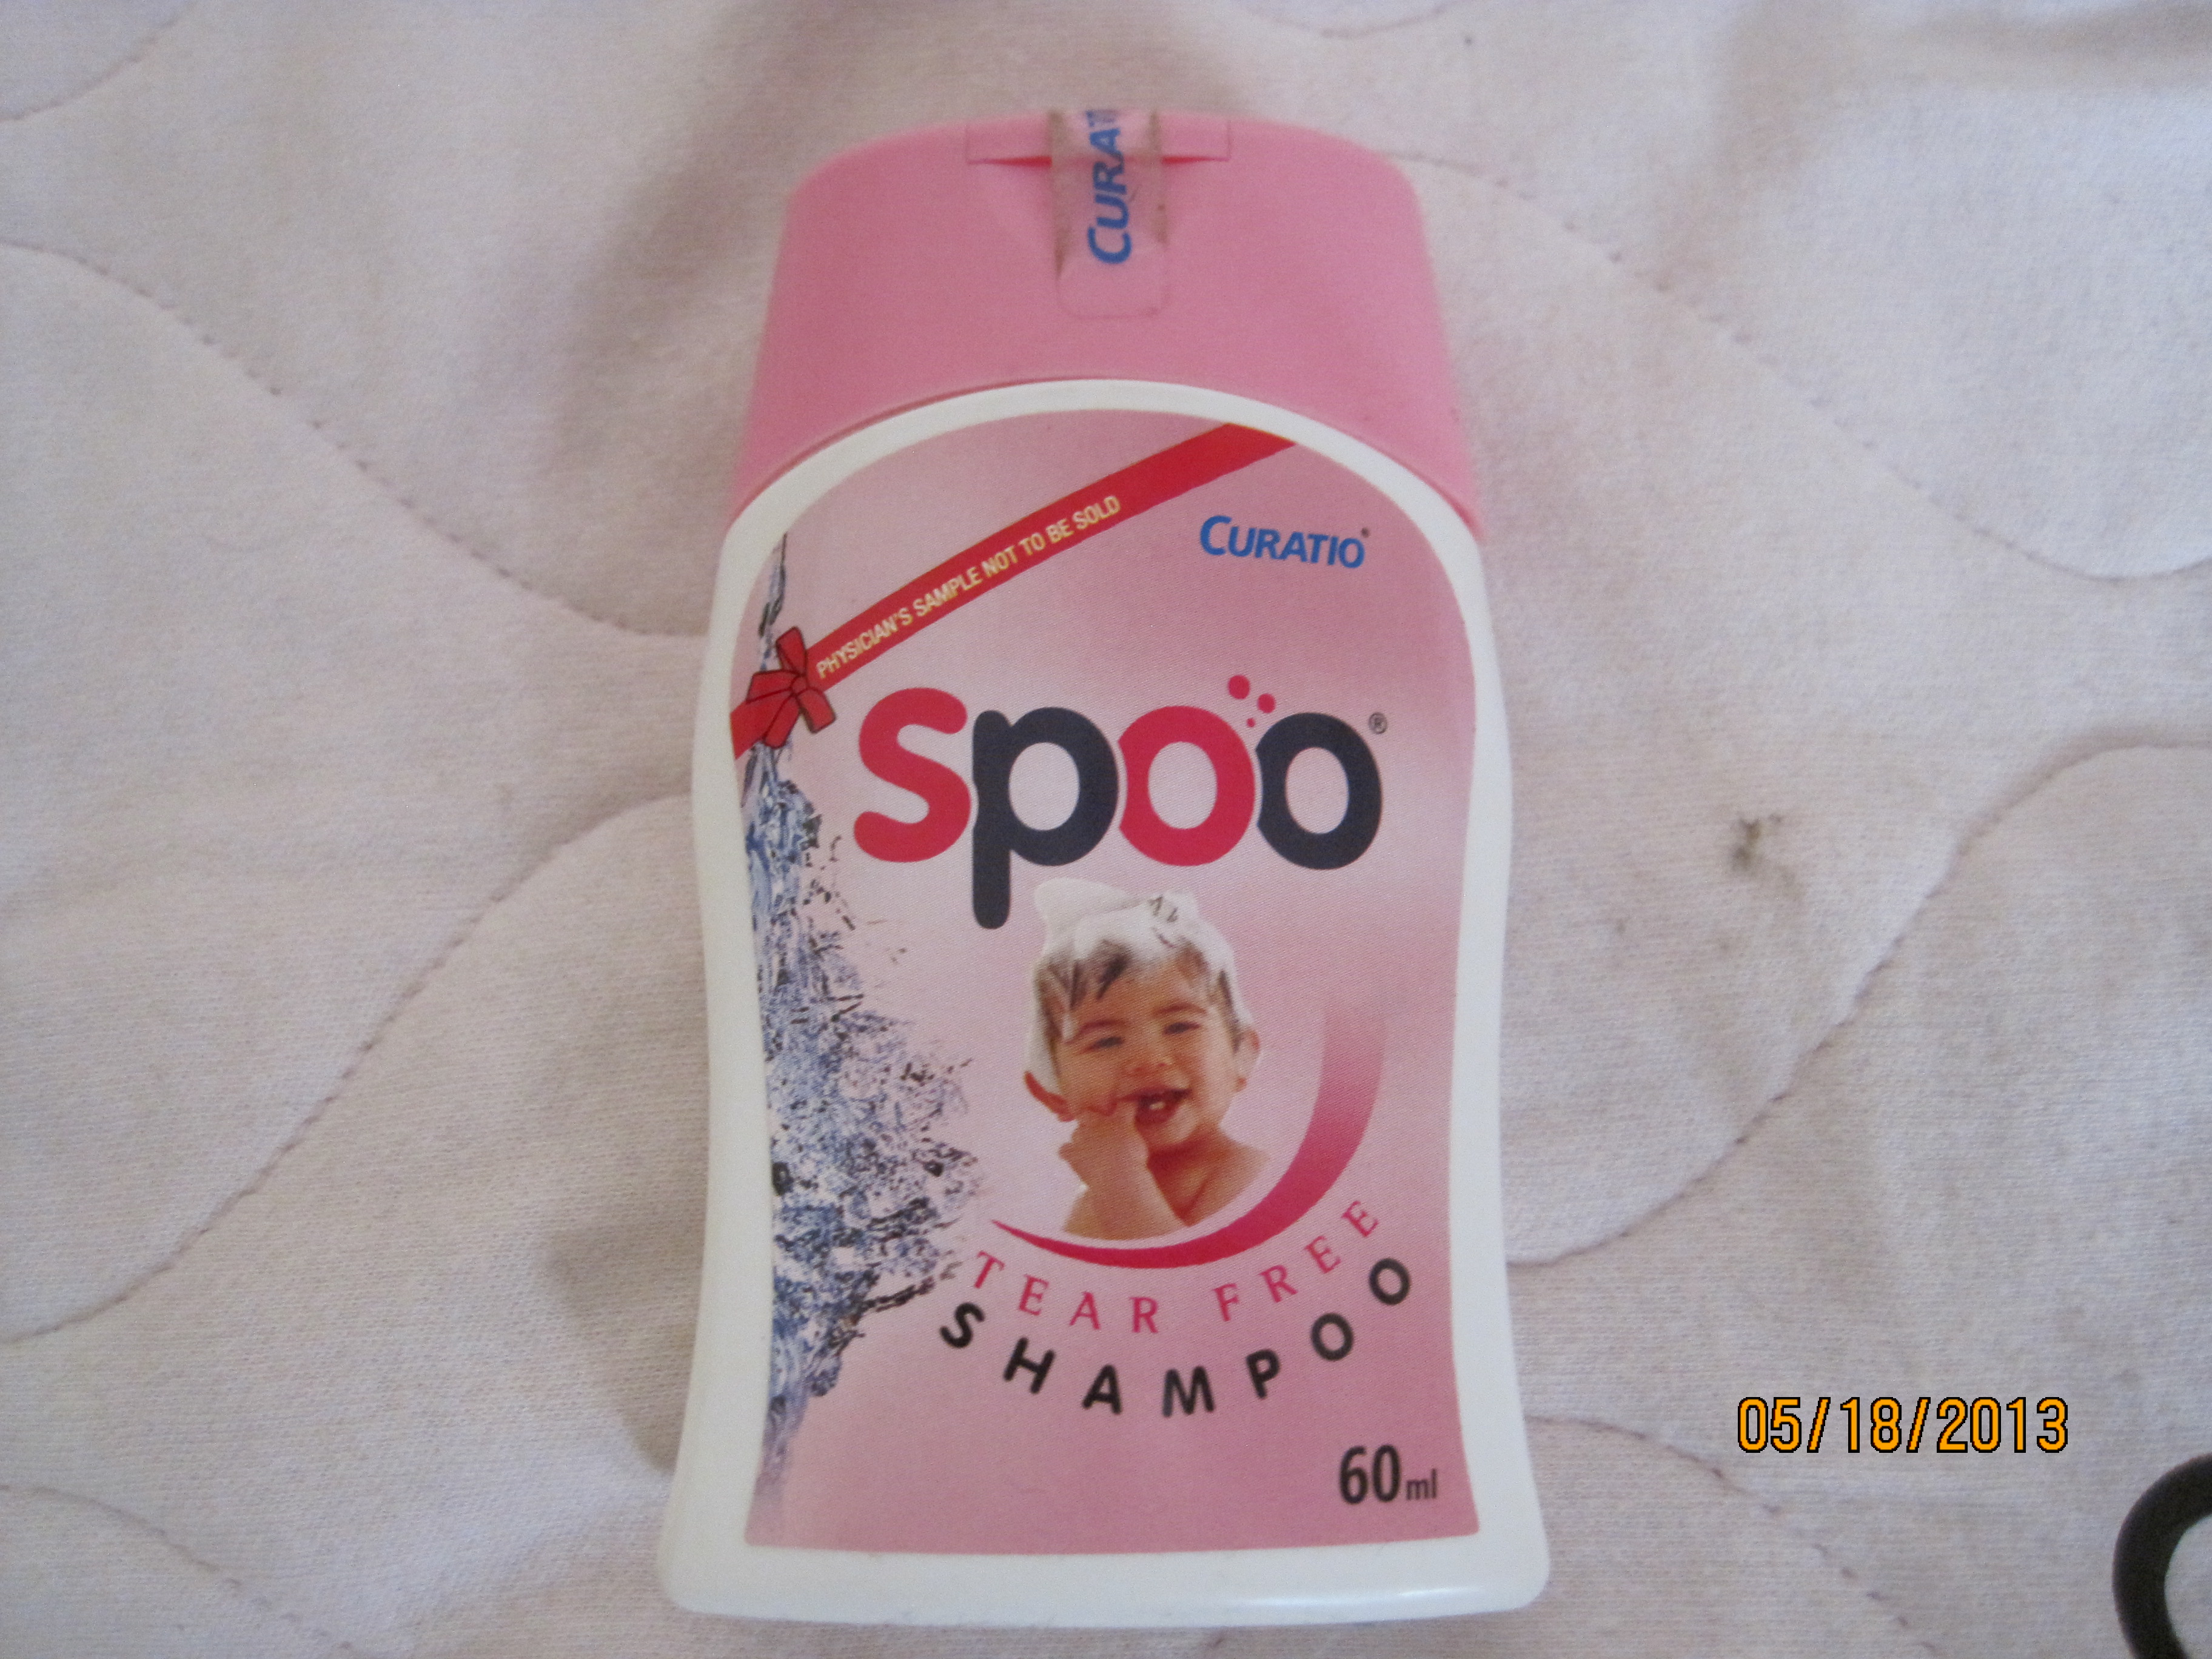 tedibar shampoo